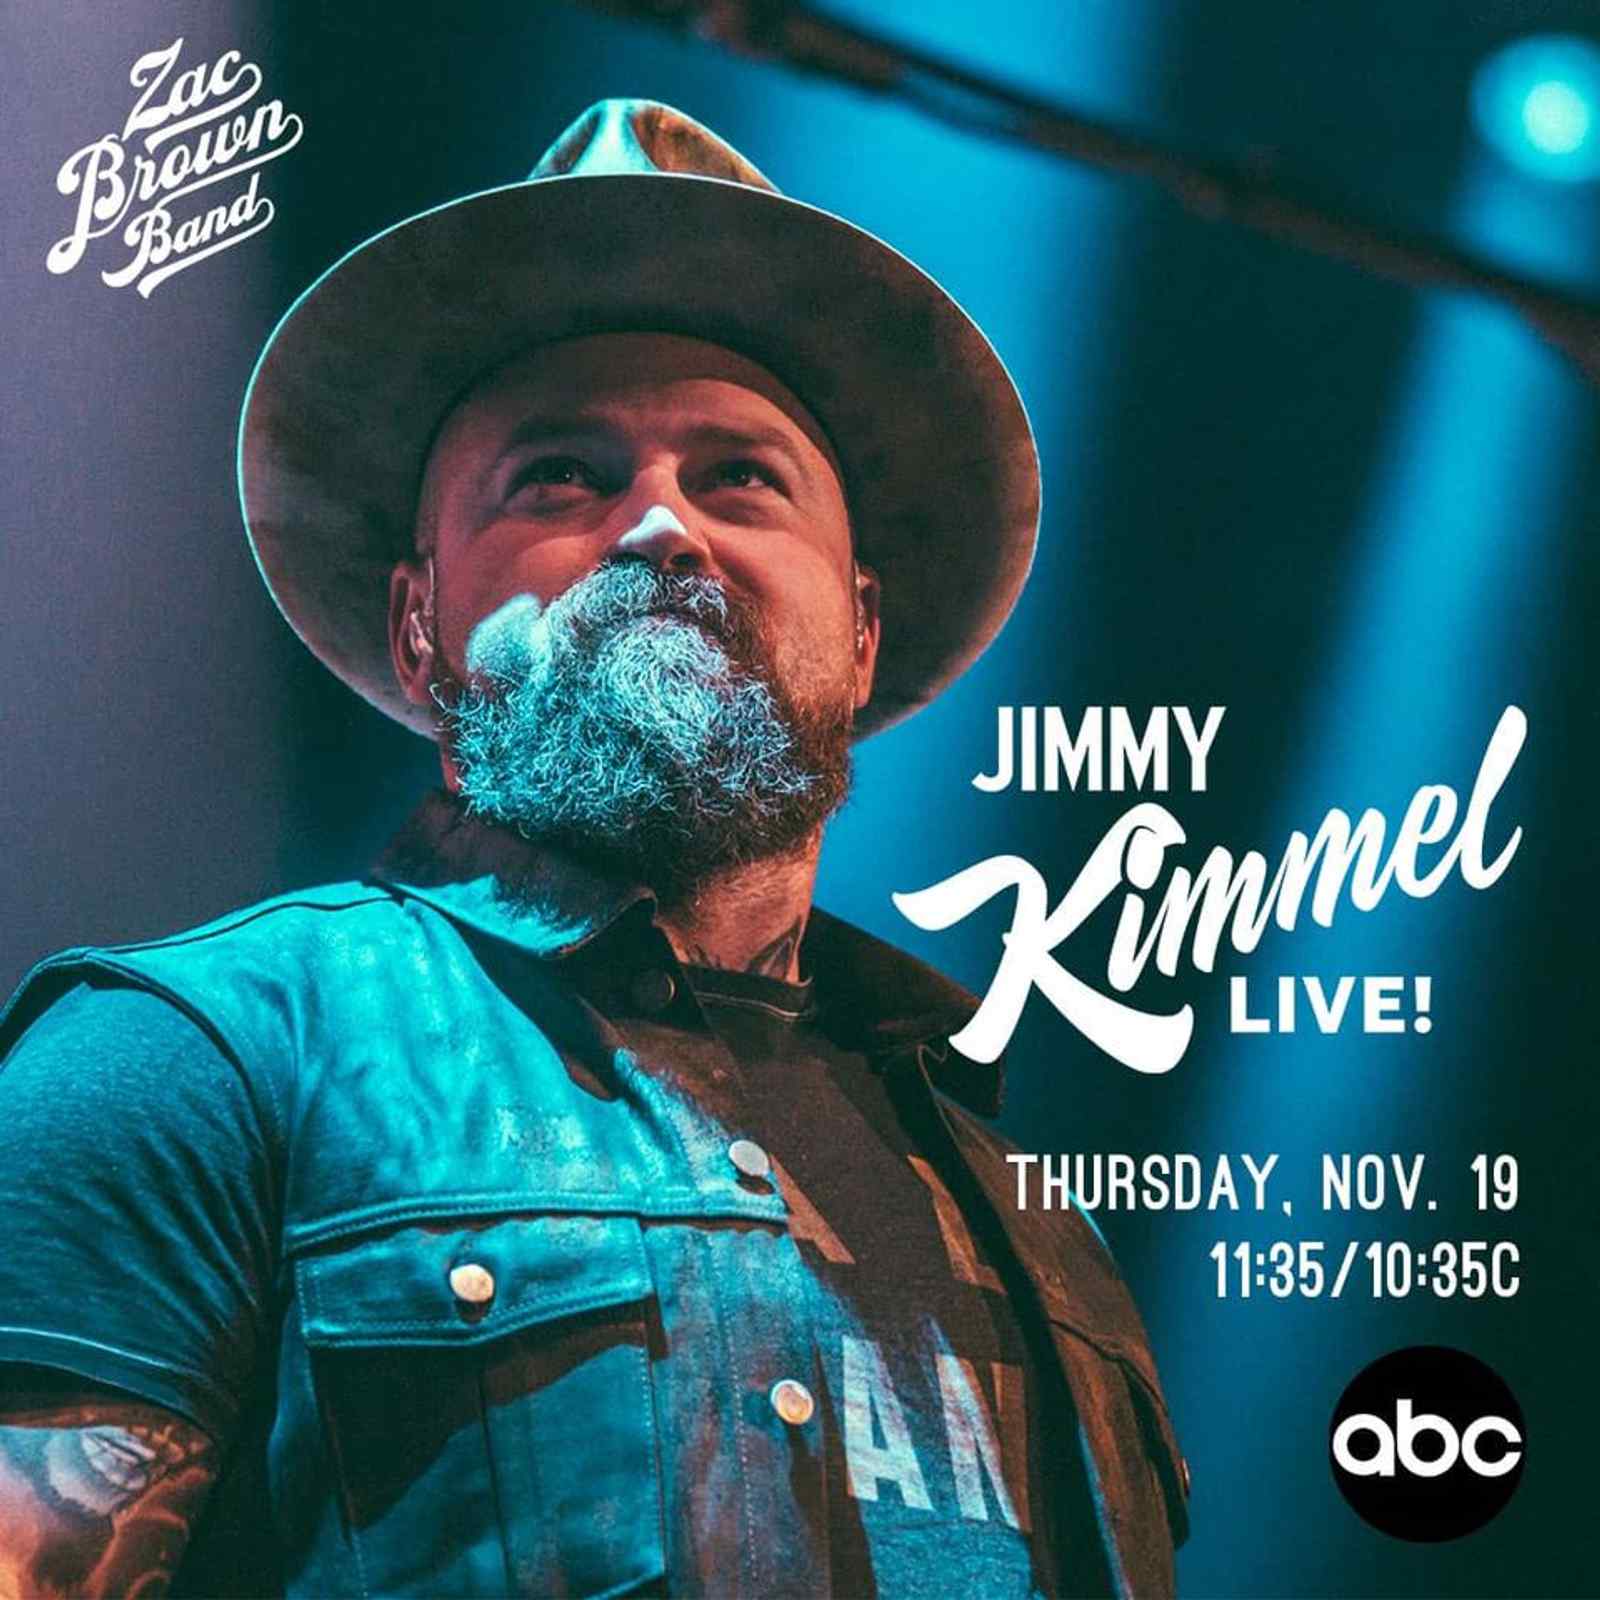 Jimmy Kimmel Live!: Zac Brown Band